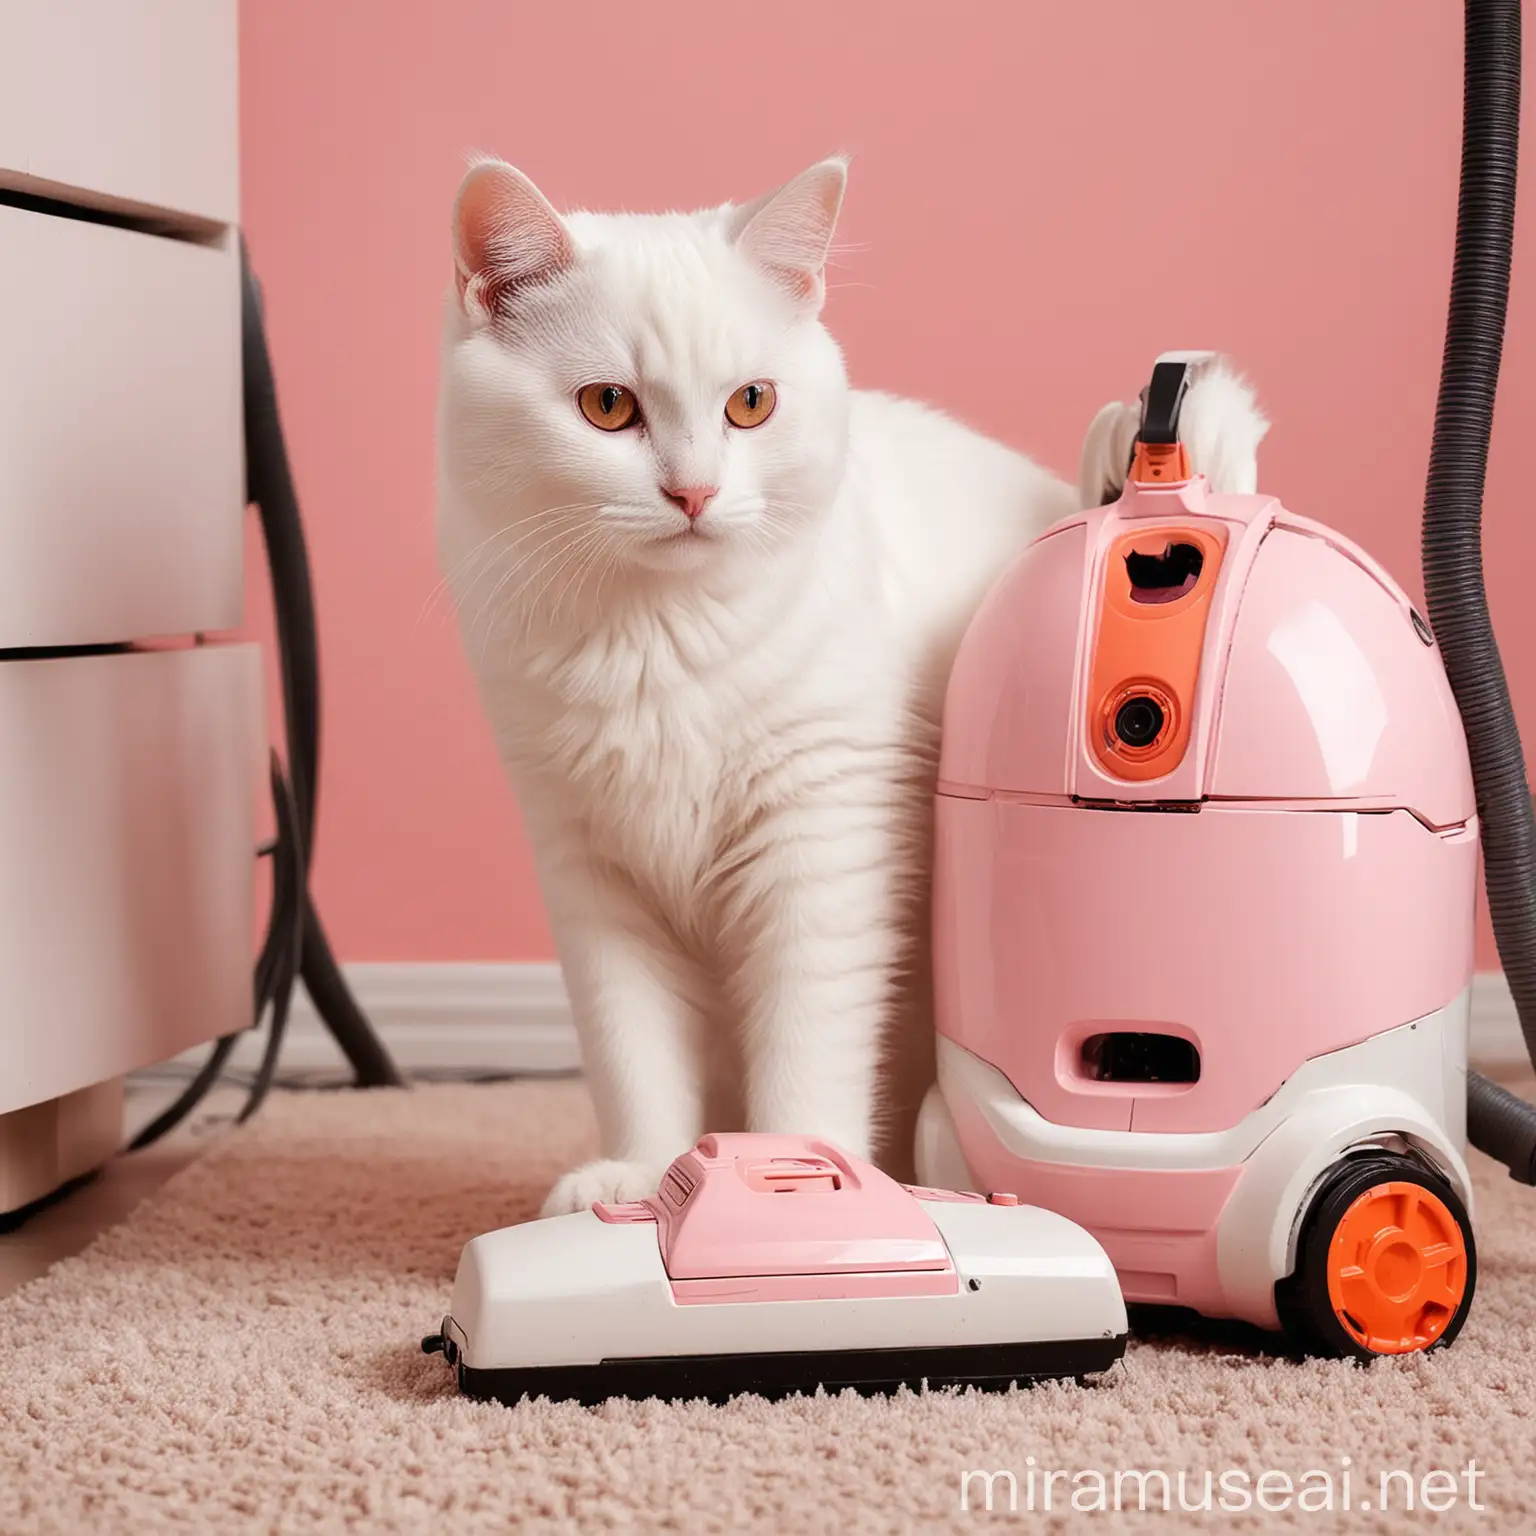 Белый котик смотрит на работающий пылесос. В розовых и оранжевых тонах